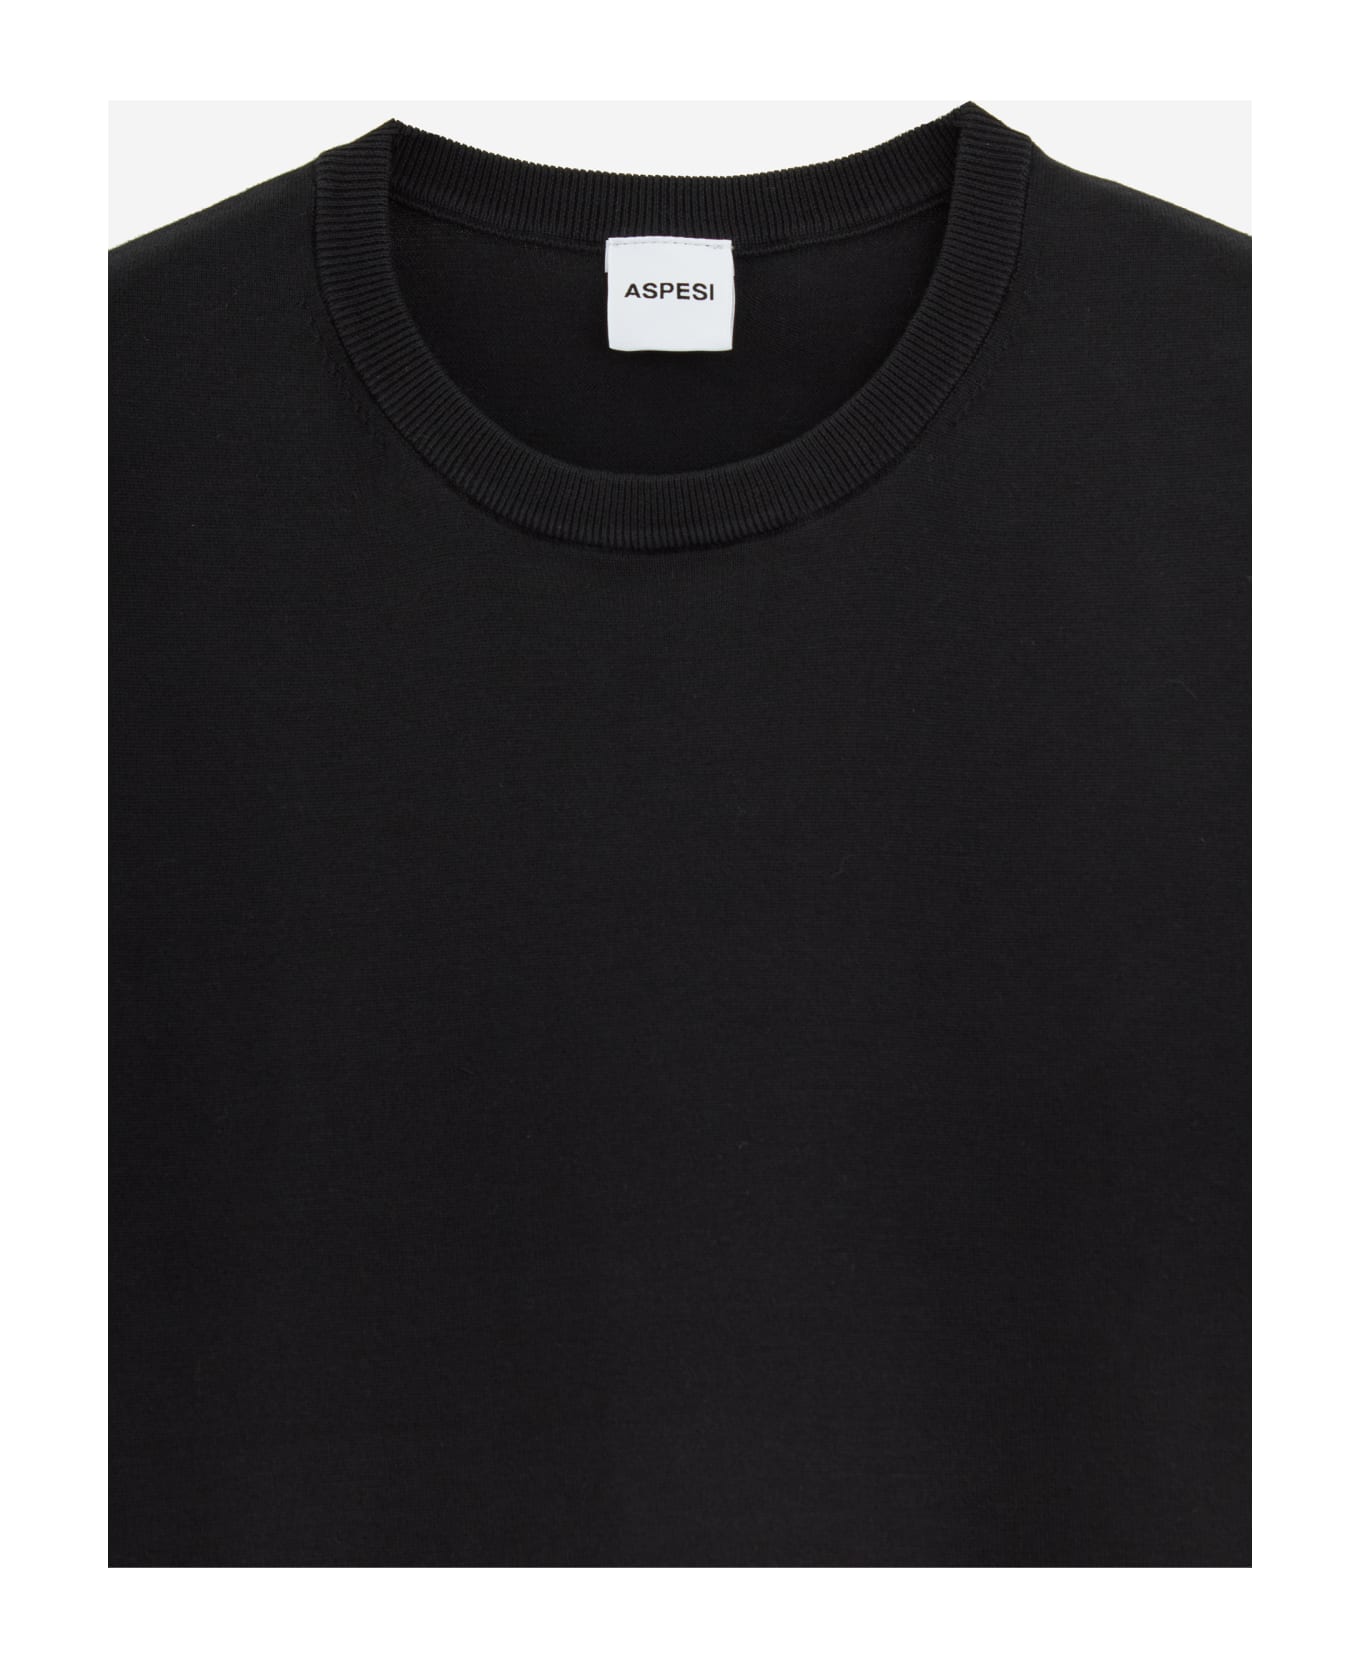 Aspesi Black Cotton T-shirt - black